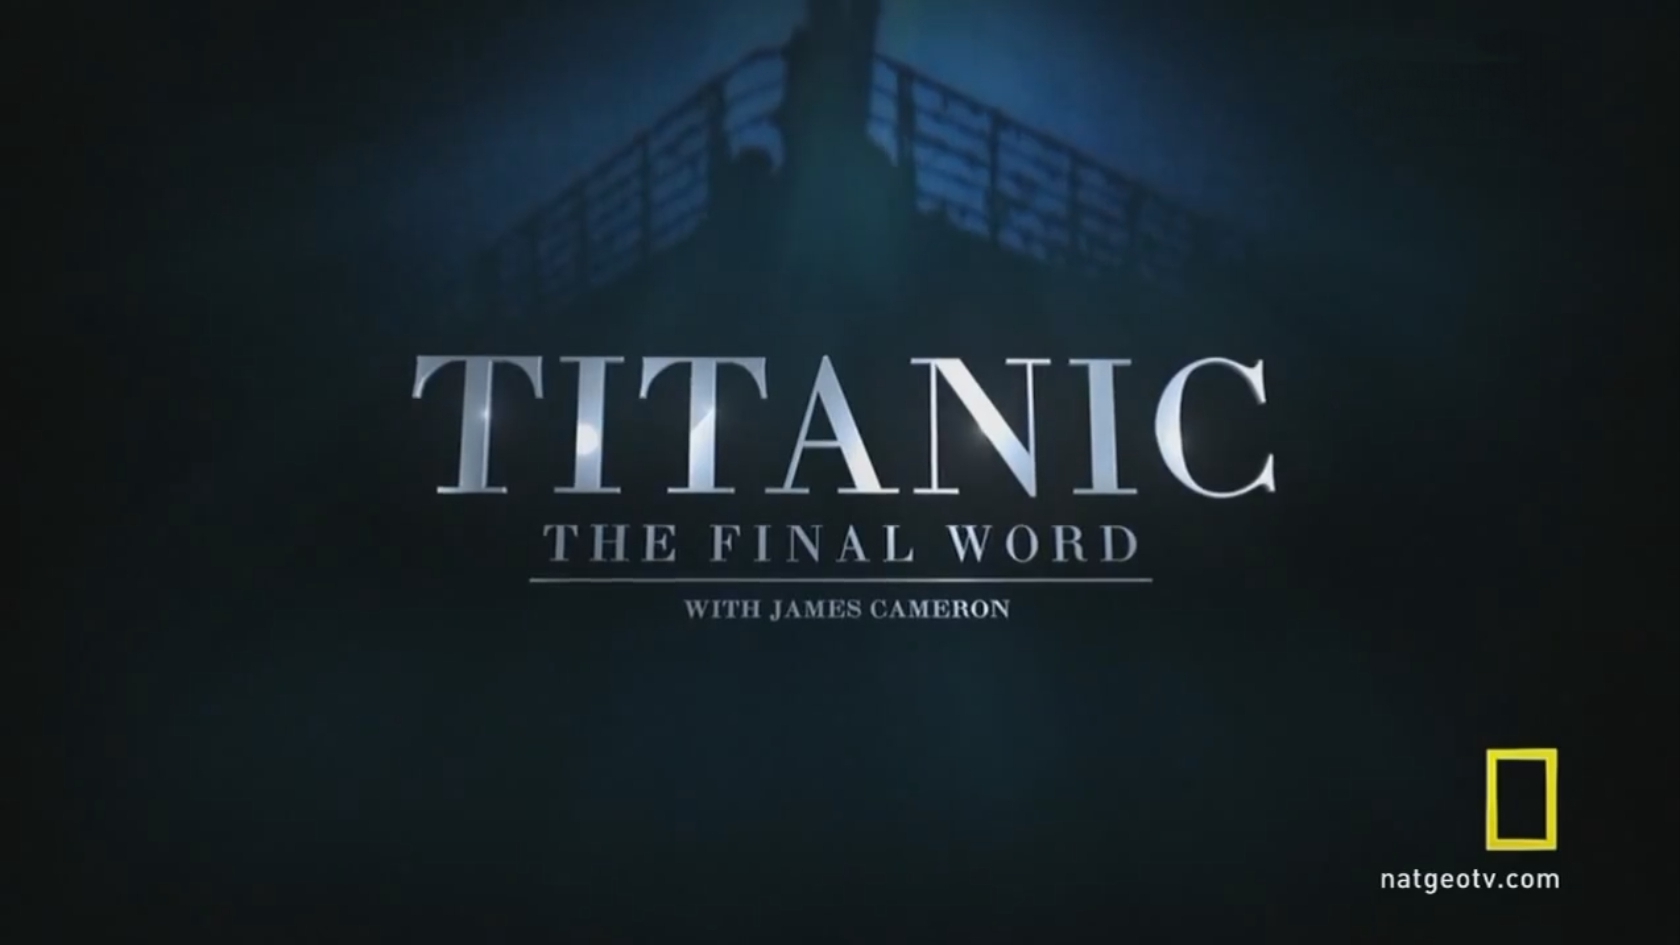 Final слово. Титаник National Geographic. Титаник надпись. Титаник логотип.